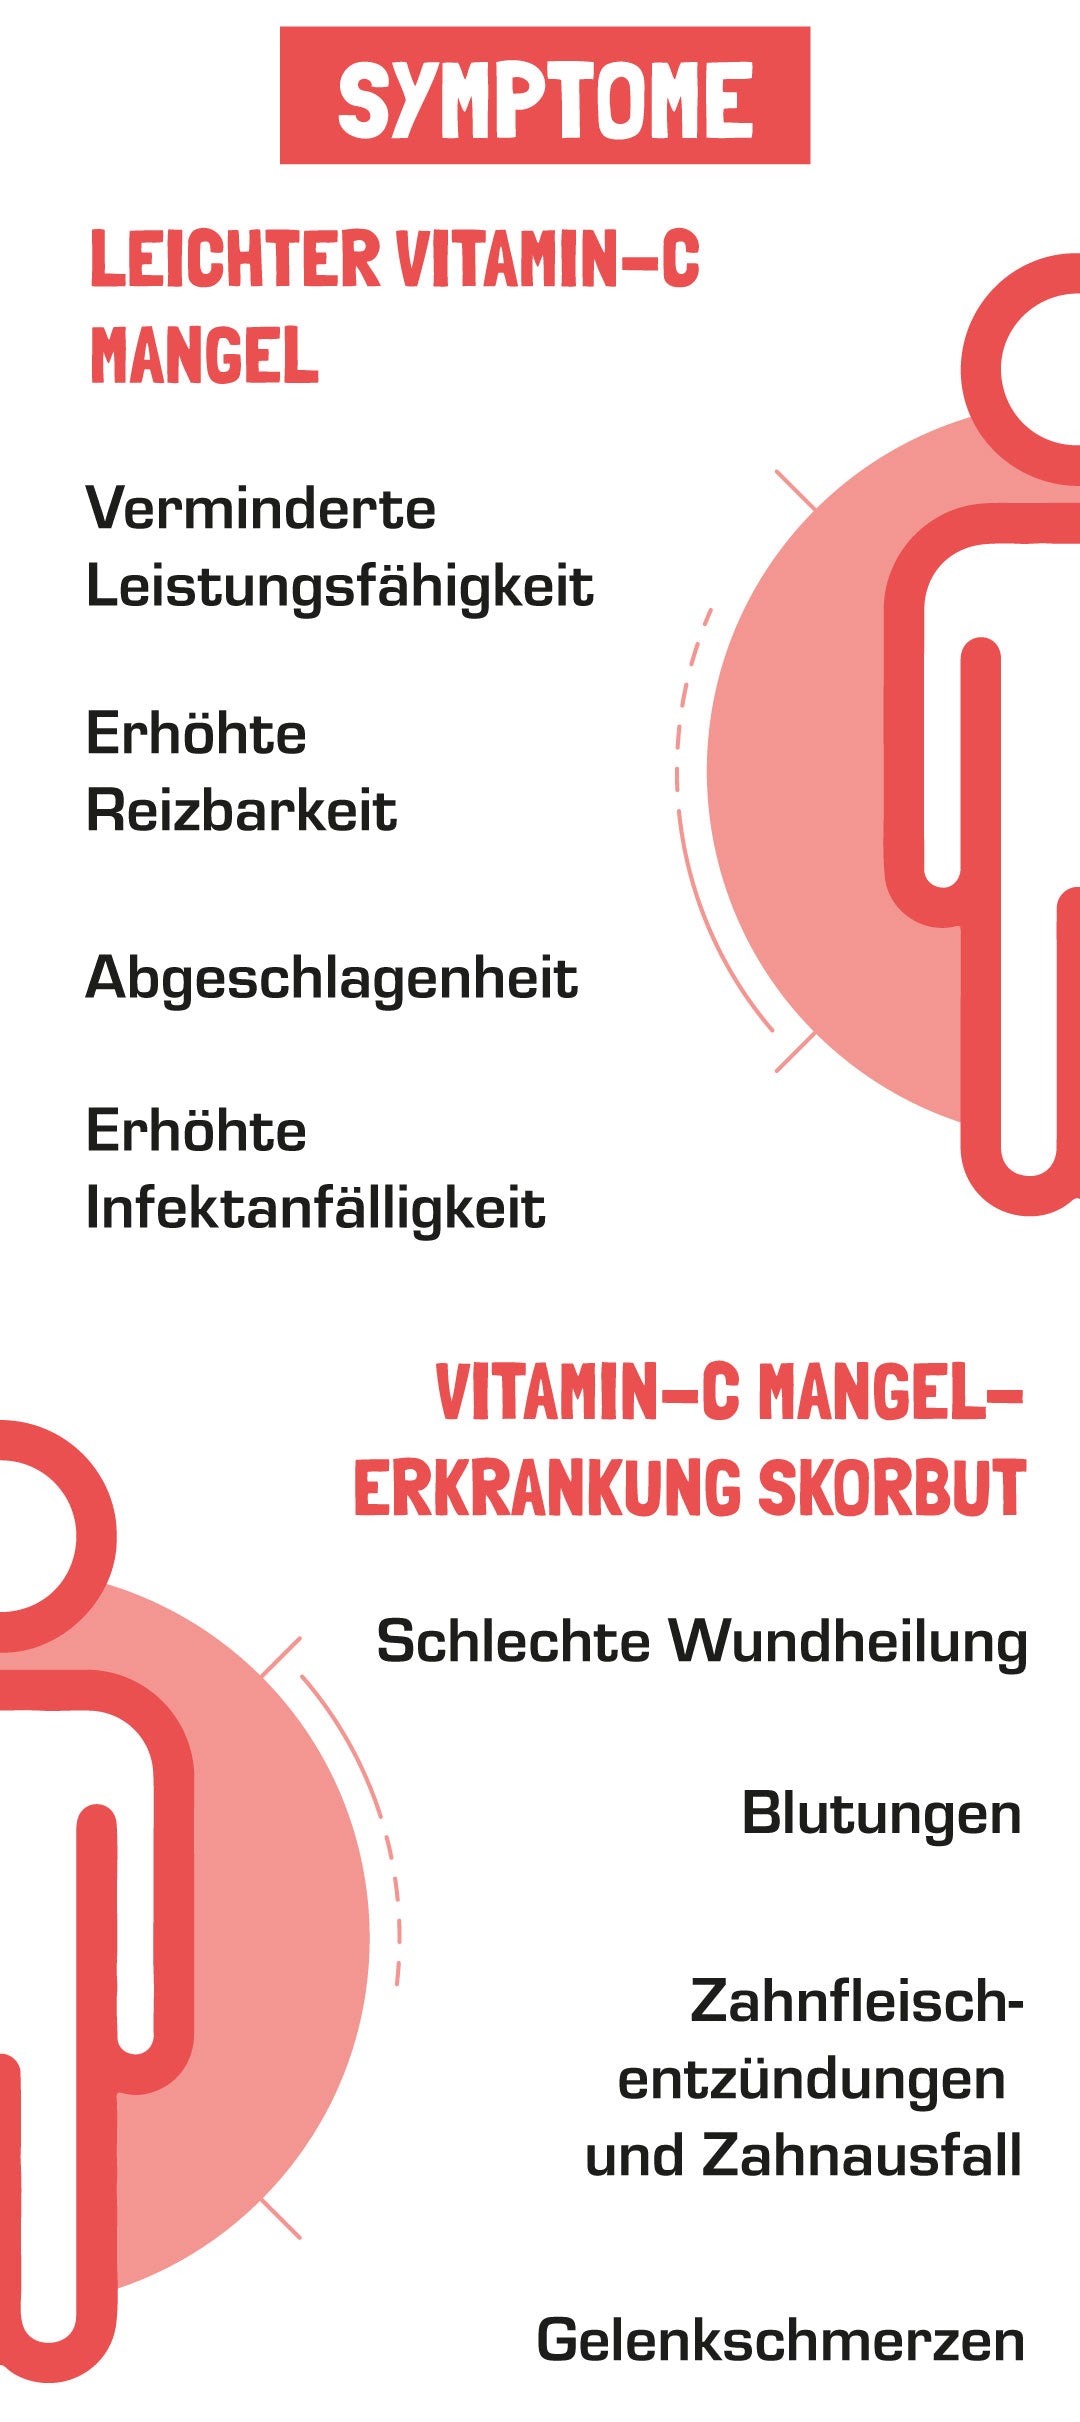 Symptome bei Vitamin C Mangel